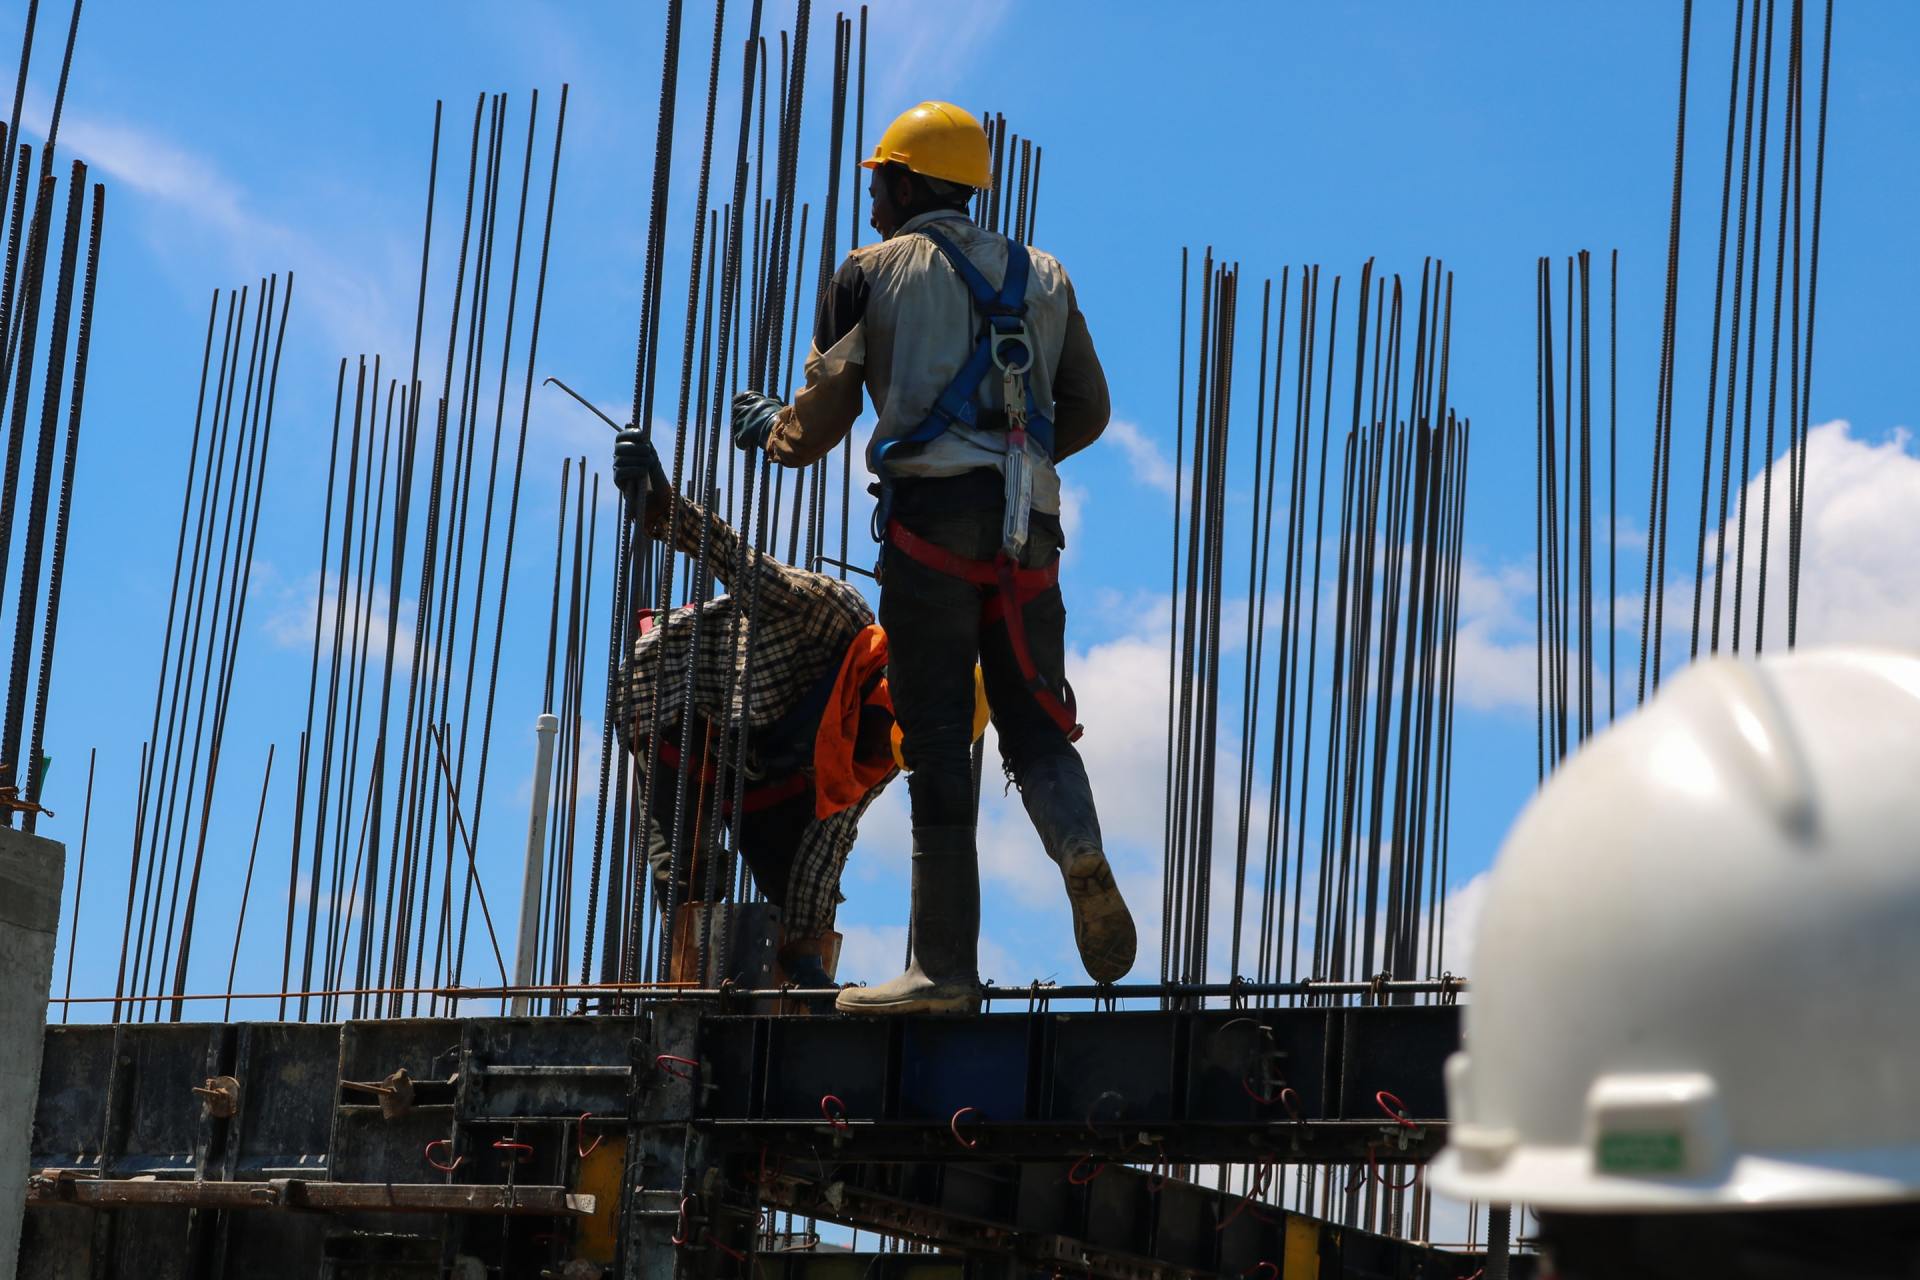 Builders in helmets erecting metal rods